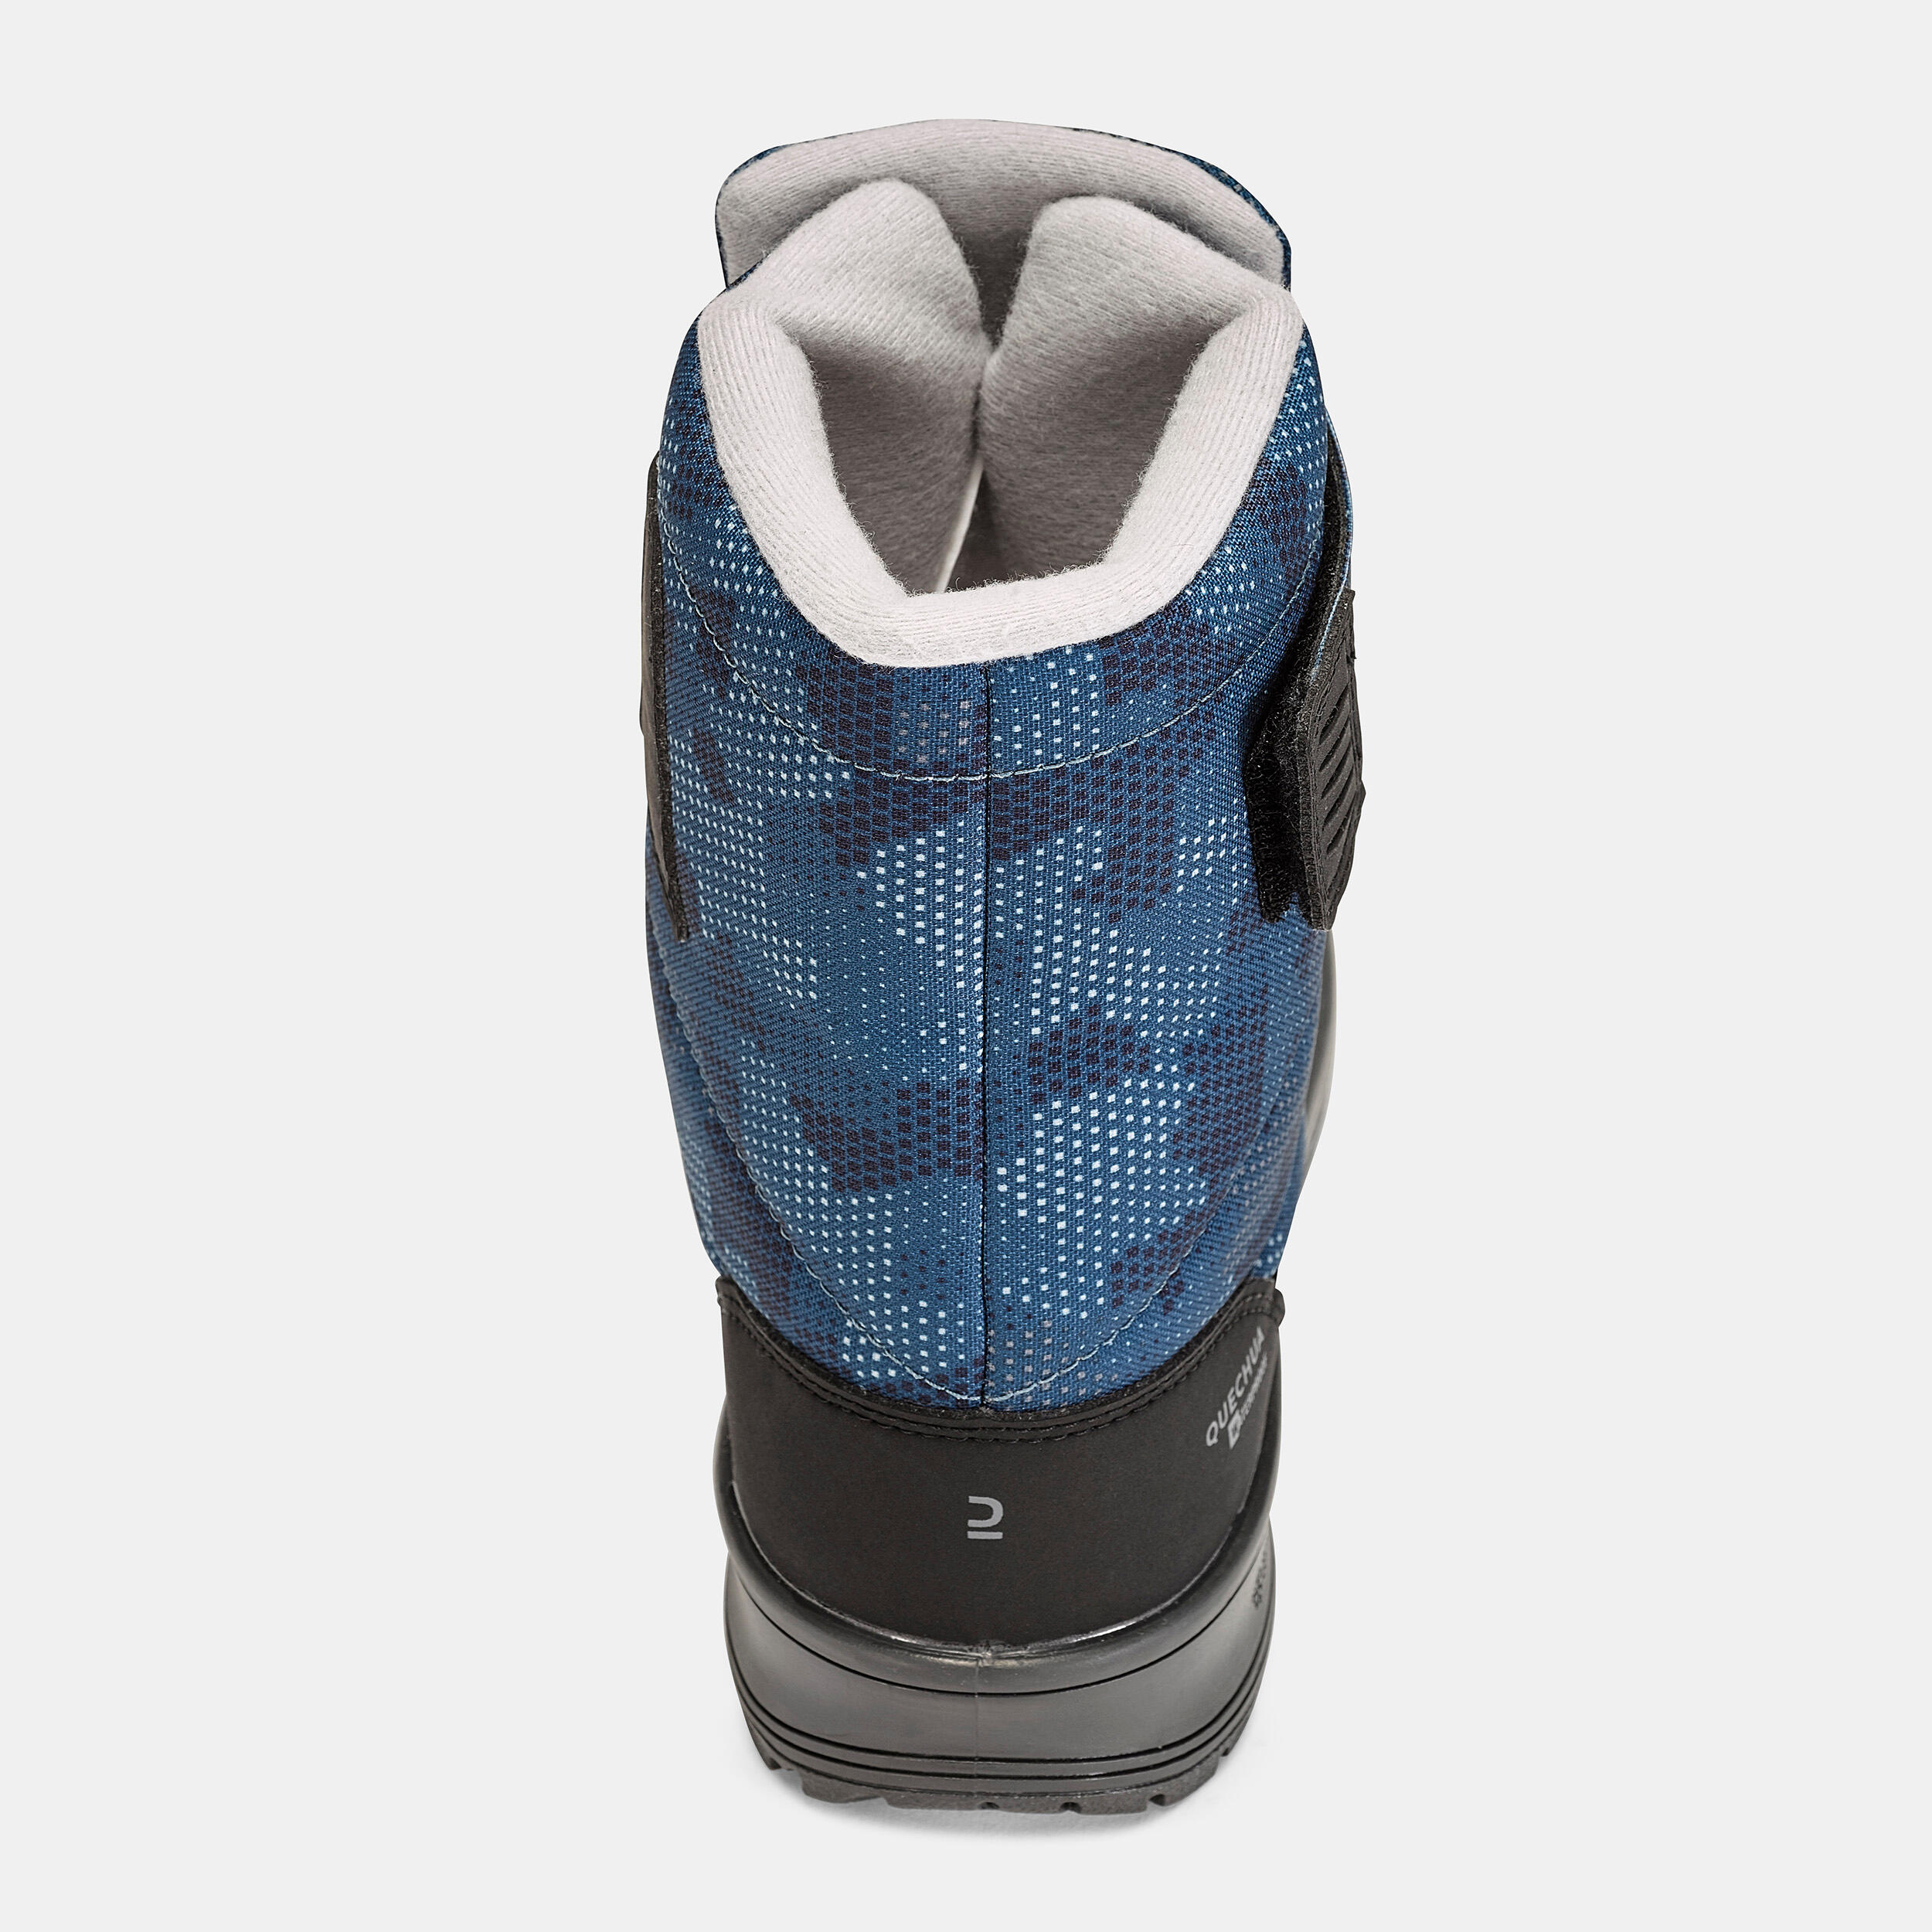 Kids’ Warm Waterproof Snow Hiking Boots SH100 X-Warm Size 7 - 5.5 8/8